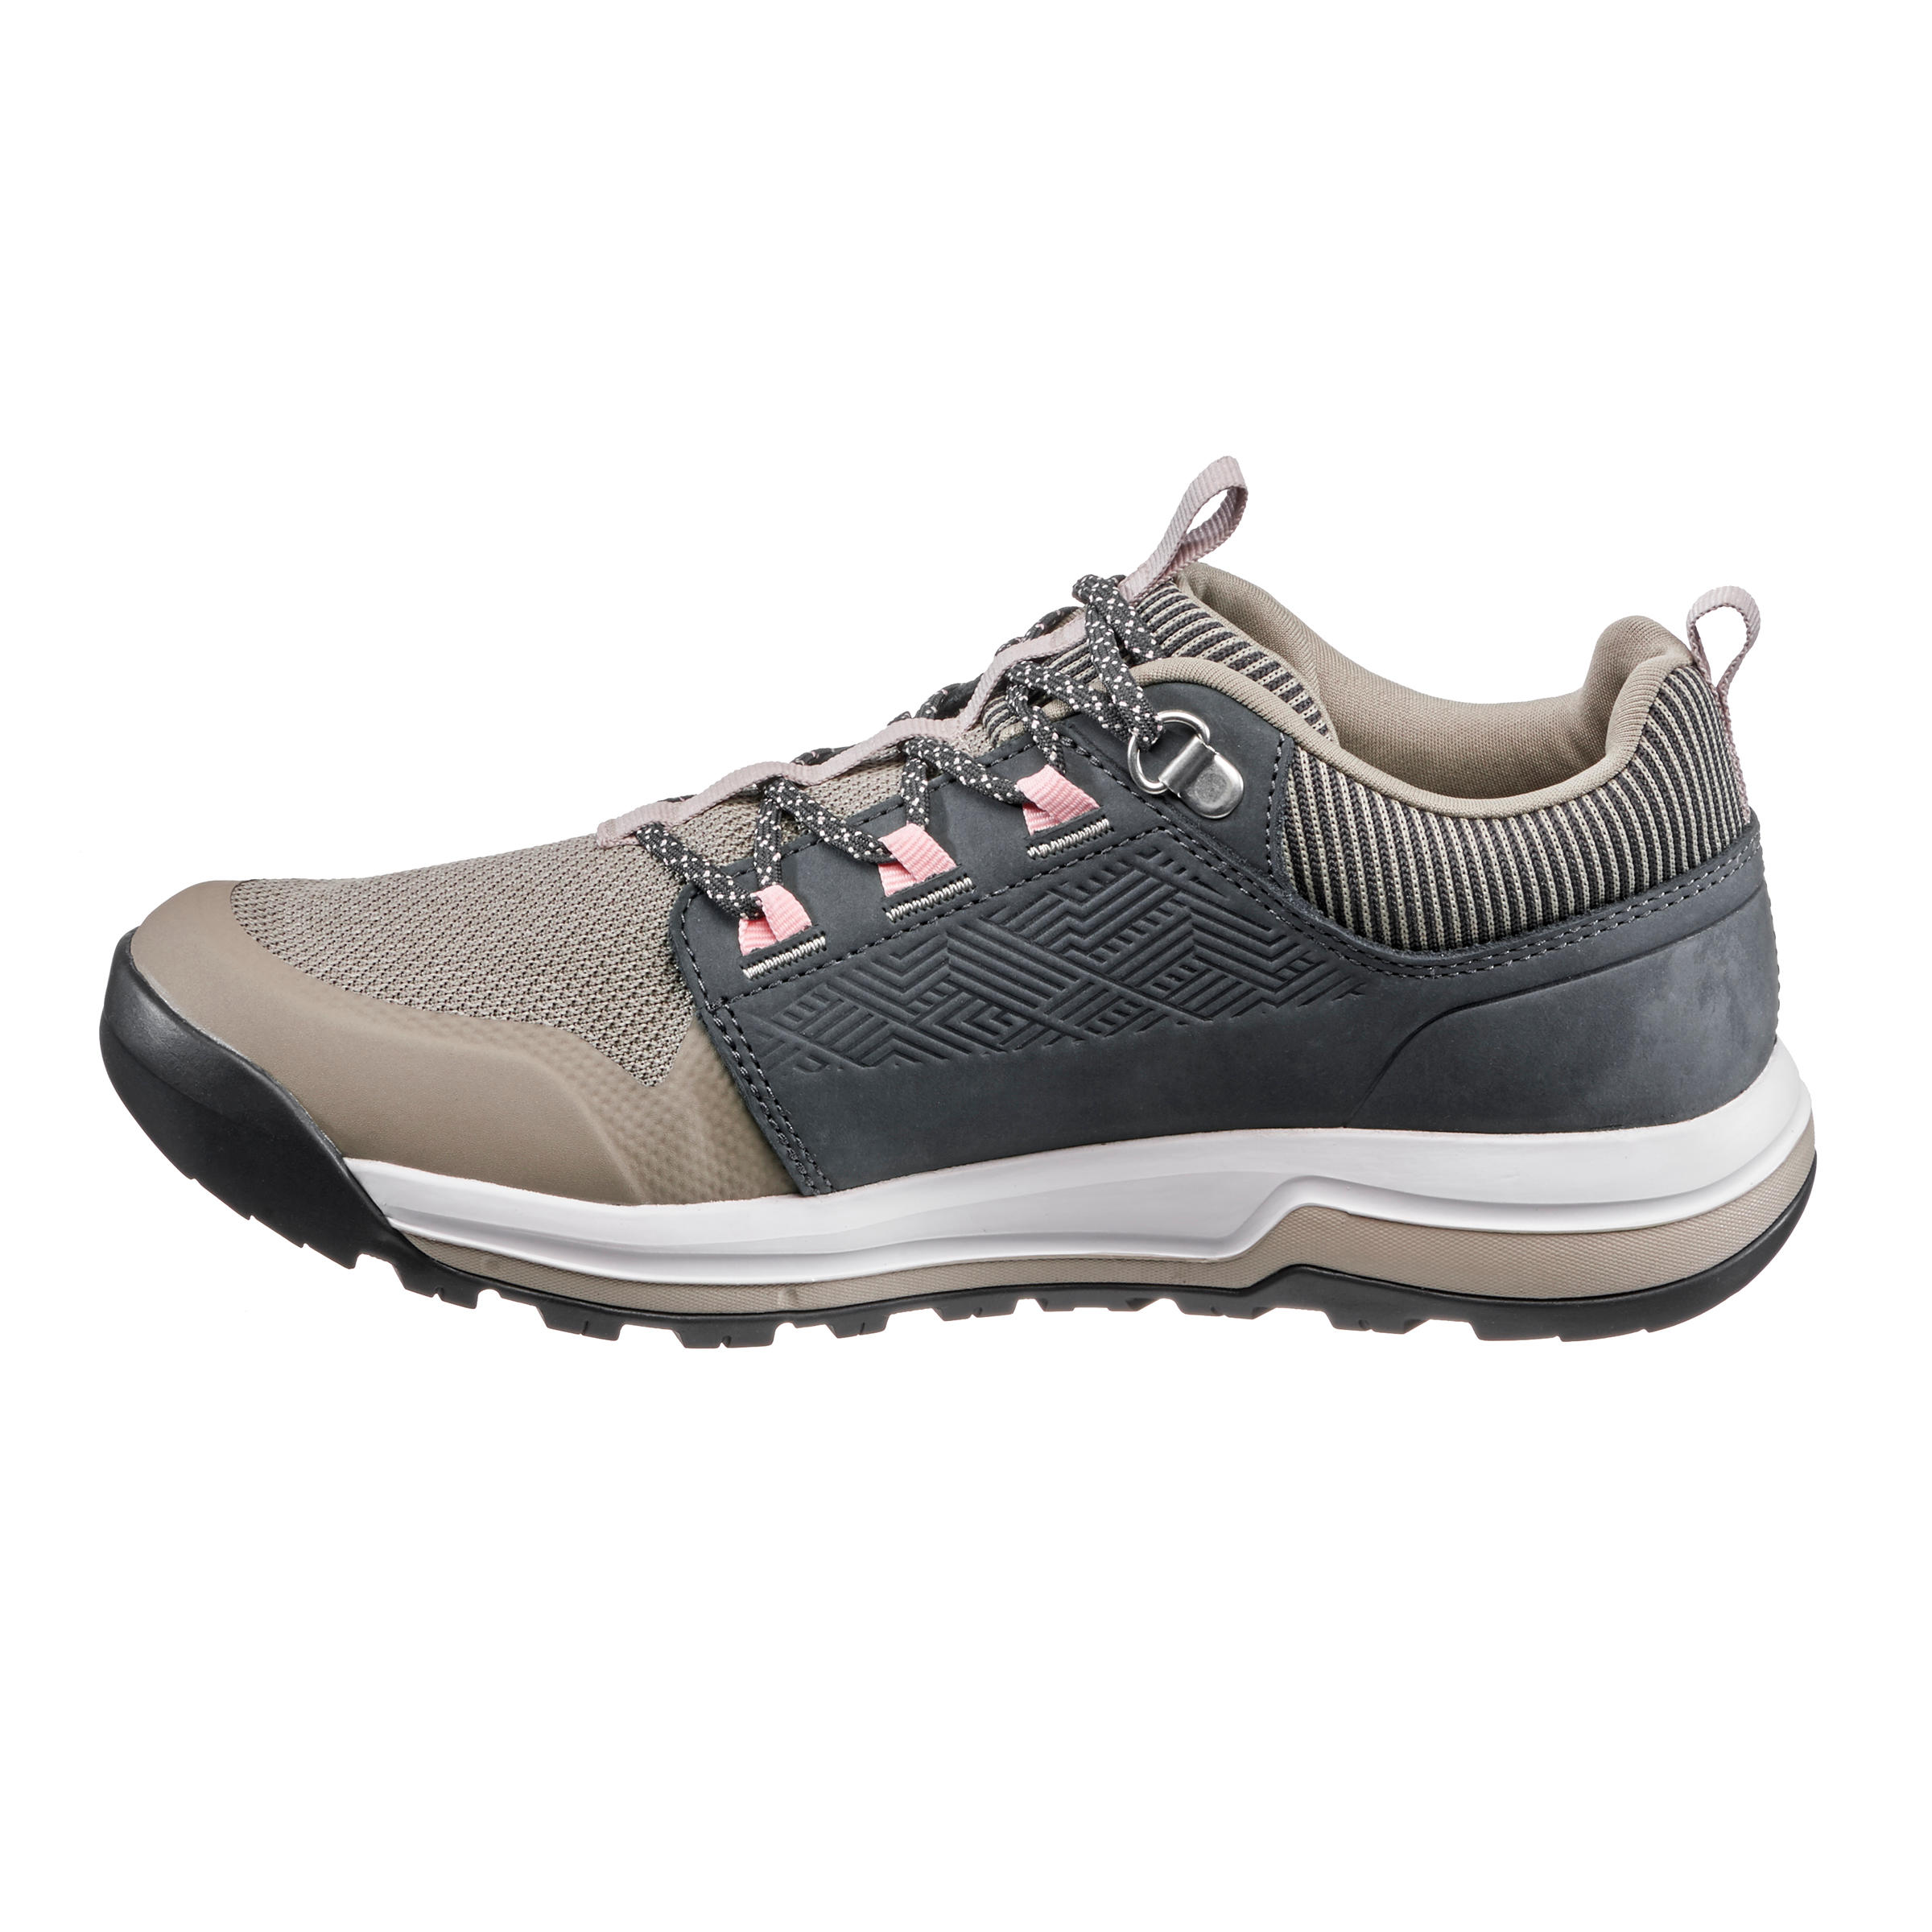 Women's Hiking Shoes -NH 500 black/peach - Iced coffee, Linen, Fluo pale  peach - Quechua - Decathlon